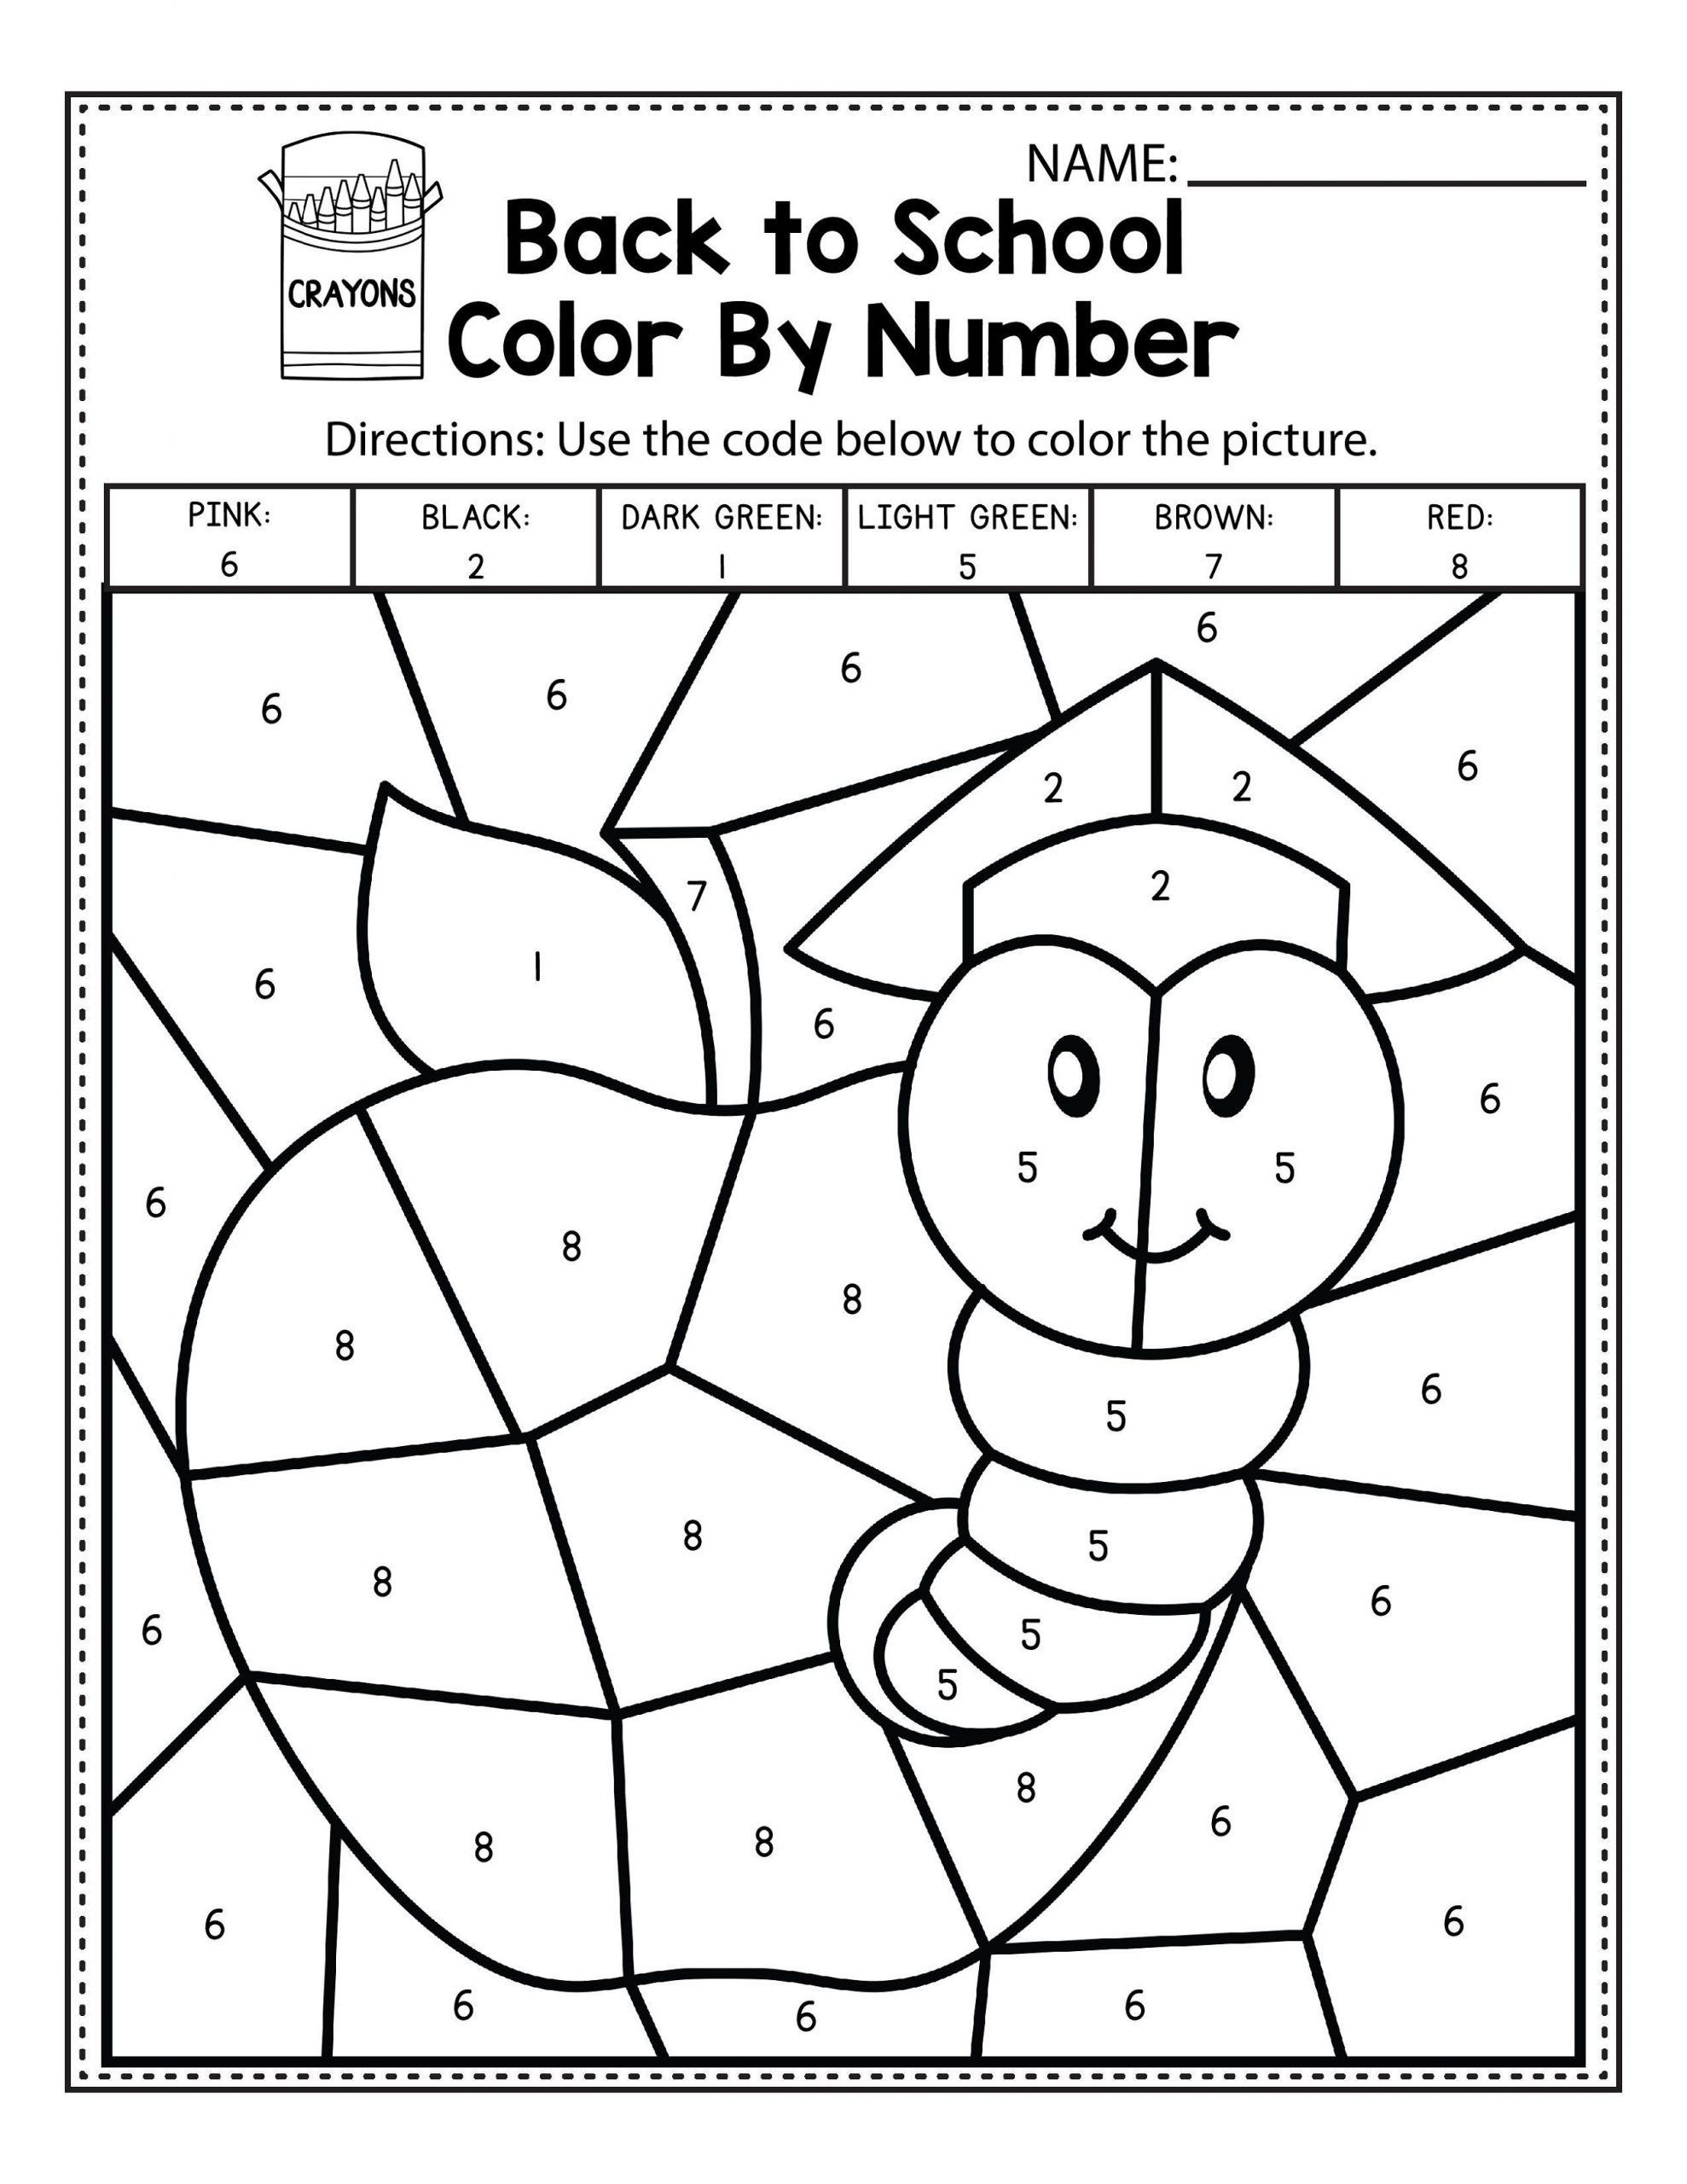 Easy Color by Number Worksheets for Kindergarten | 101 ...